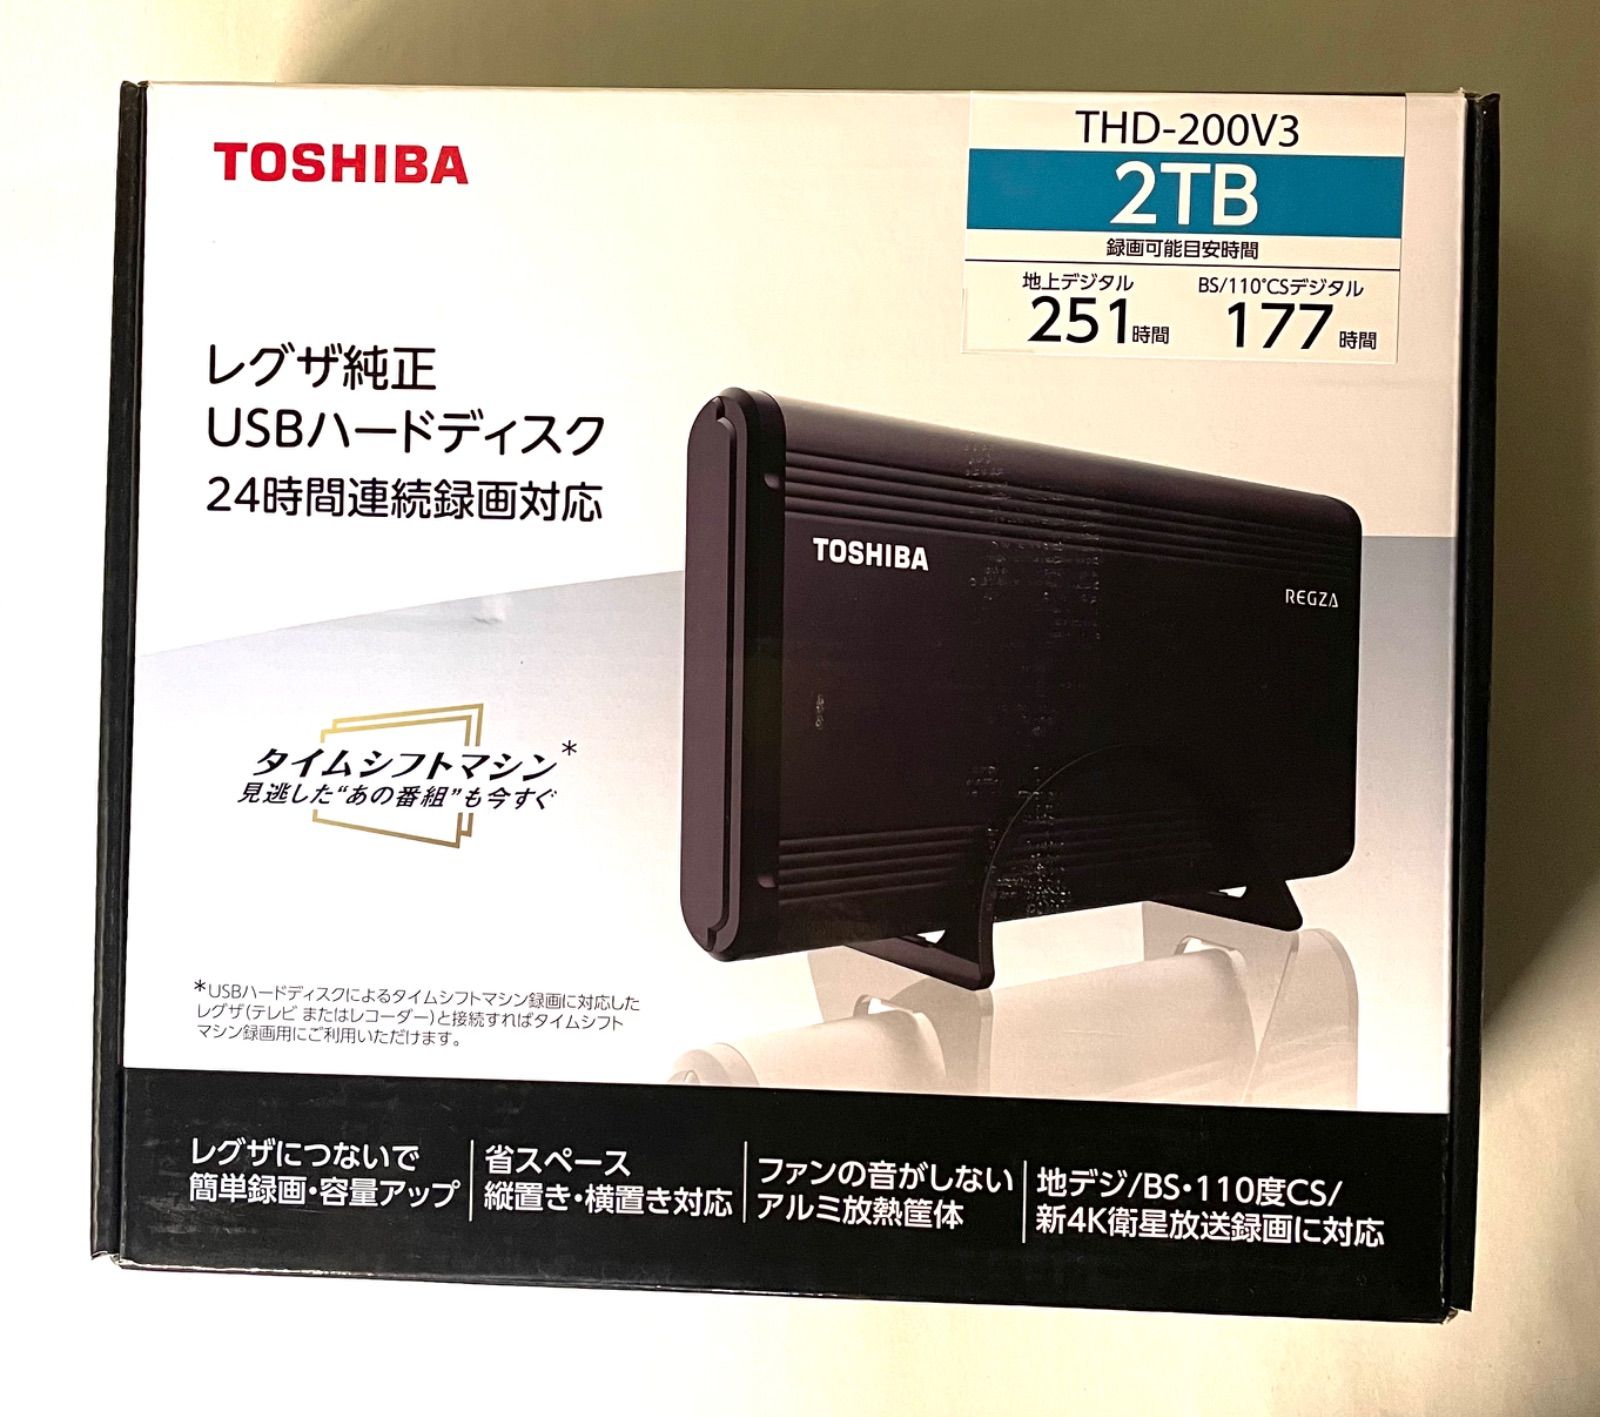 TOSHIBA THD-200V3-